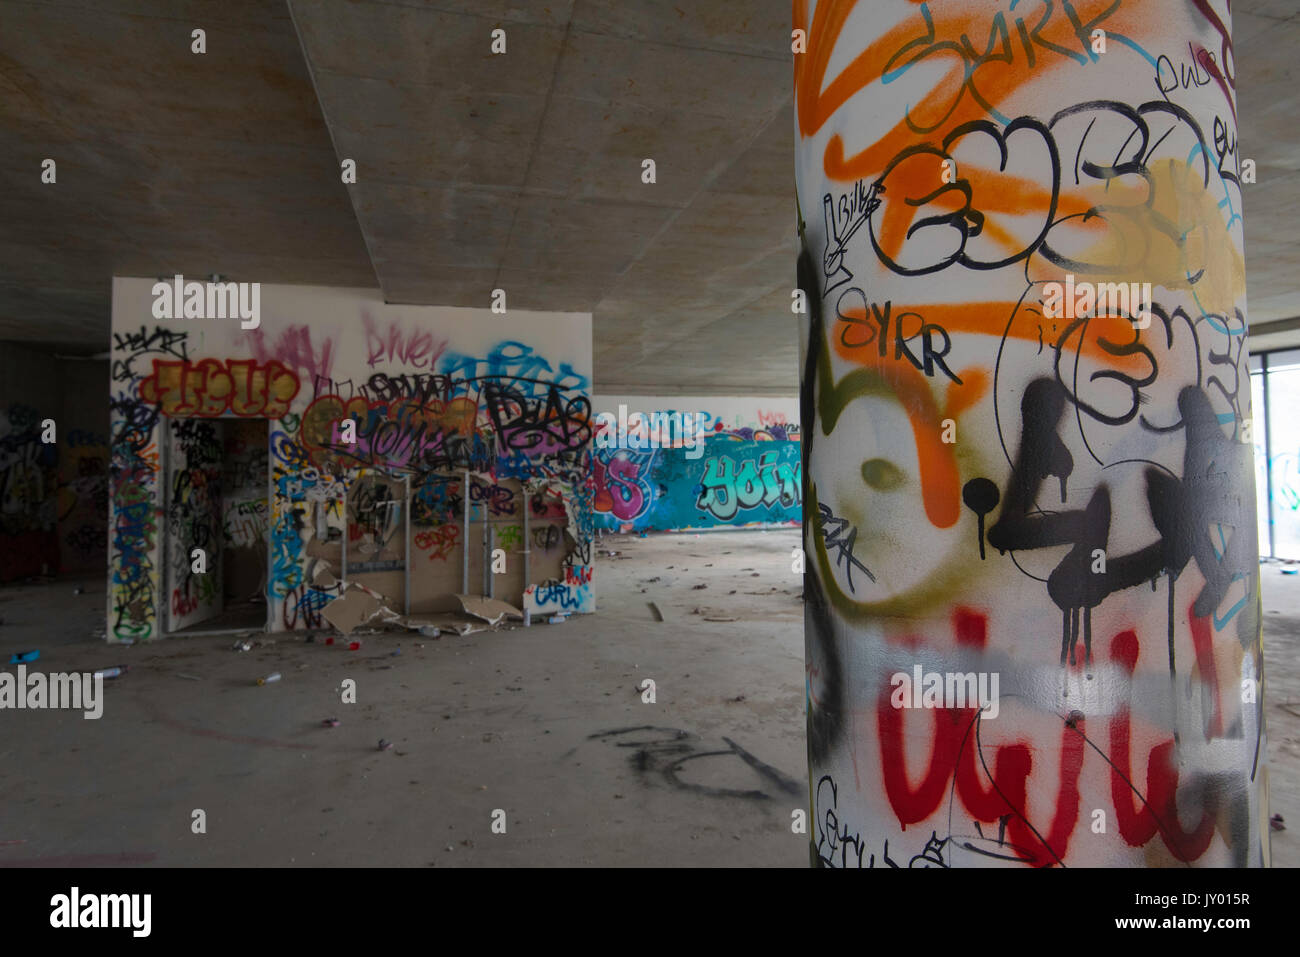 Sprühen Sie in einem verlassenen Geschäftsgebäude in Sydney, Australien, bemalte und mit Graffiti gekennzeichnete Wände und Aerosoldosen Stockfoto